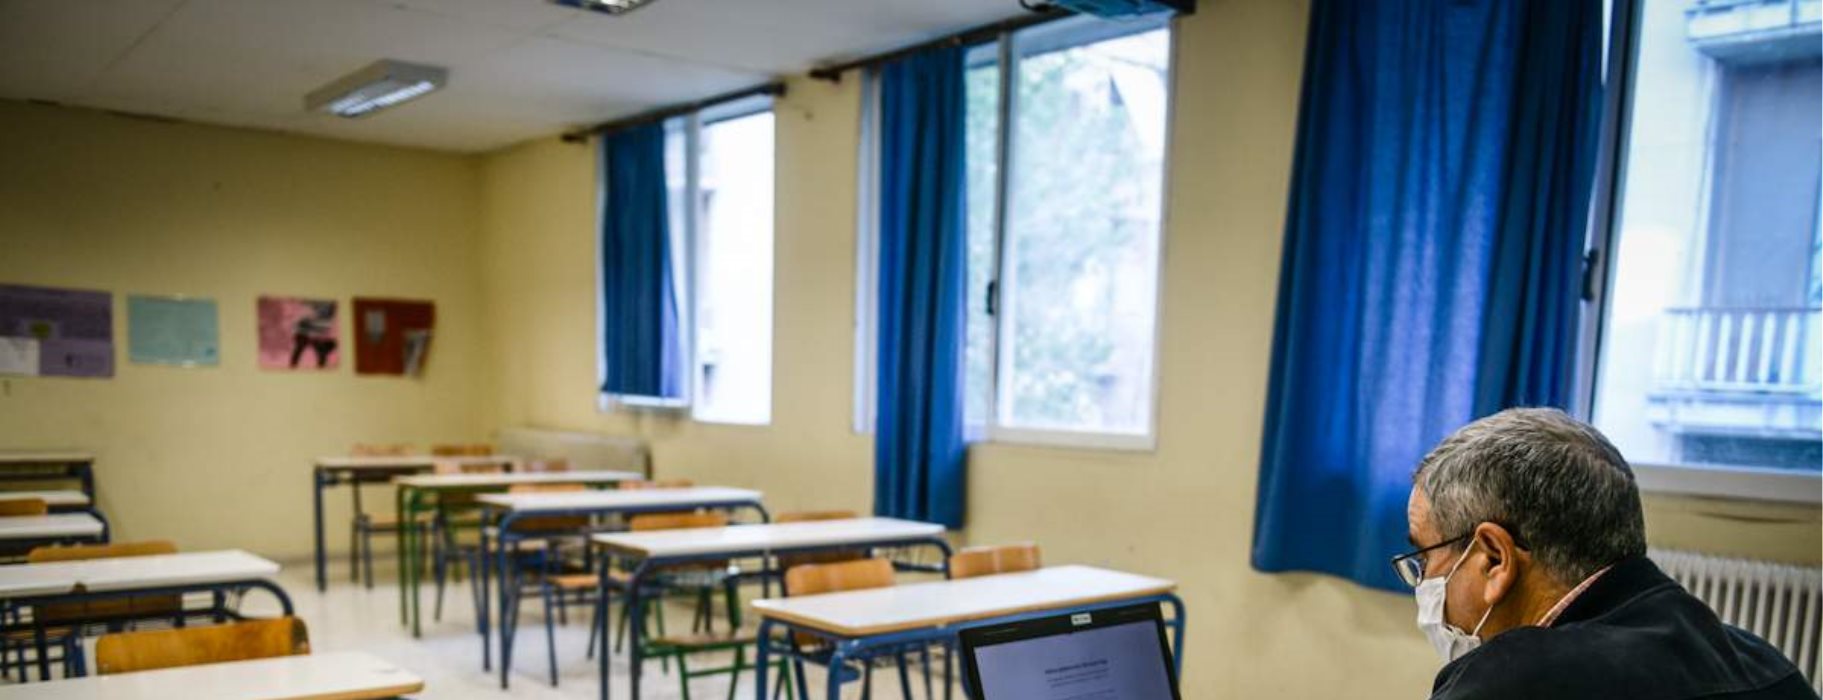 Ποια τηλεκπαίδευση; – Έκθεση «κόλαφος» για κυβέρνηση: Μόνο ένας στους τέσσερις μαθητές έχει πρόσβαση